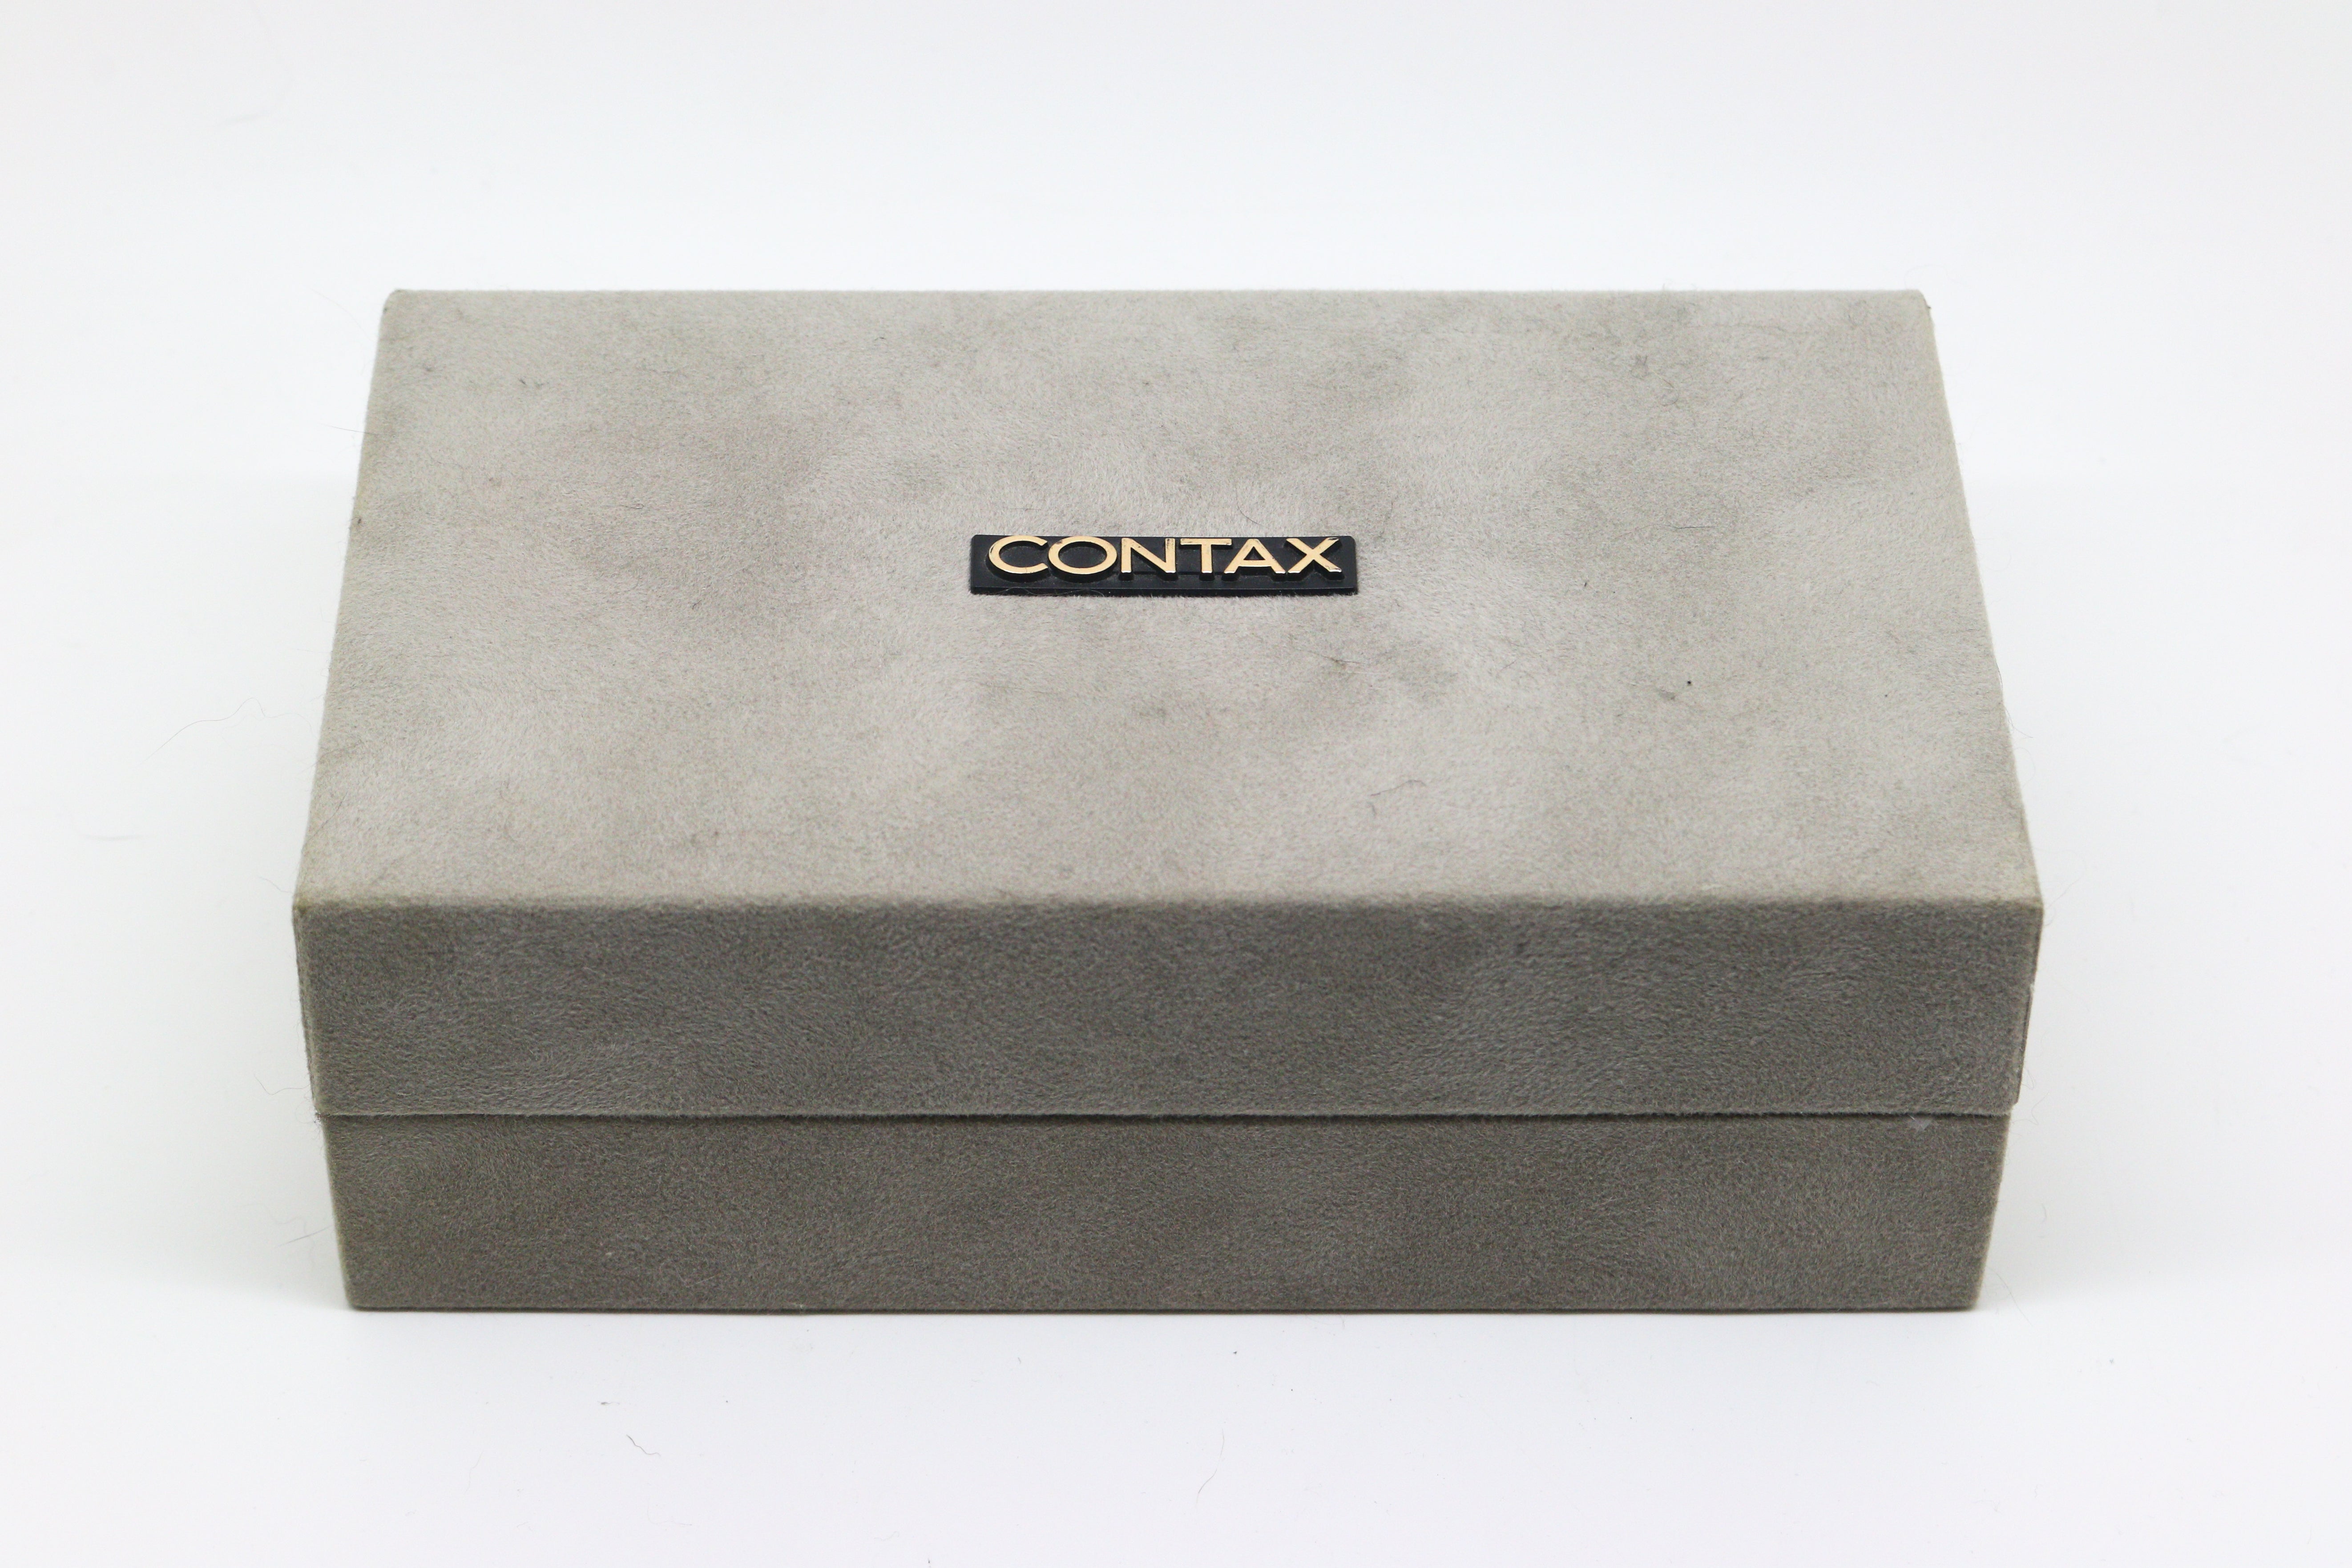 Contax T2 'Titanium Black' (Boxed)